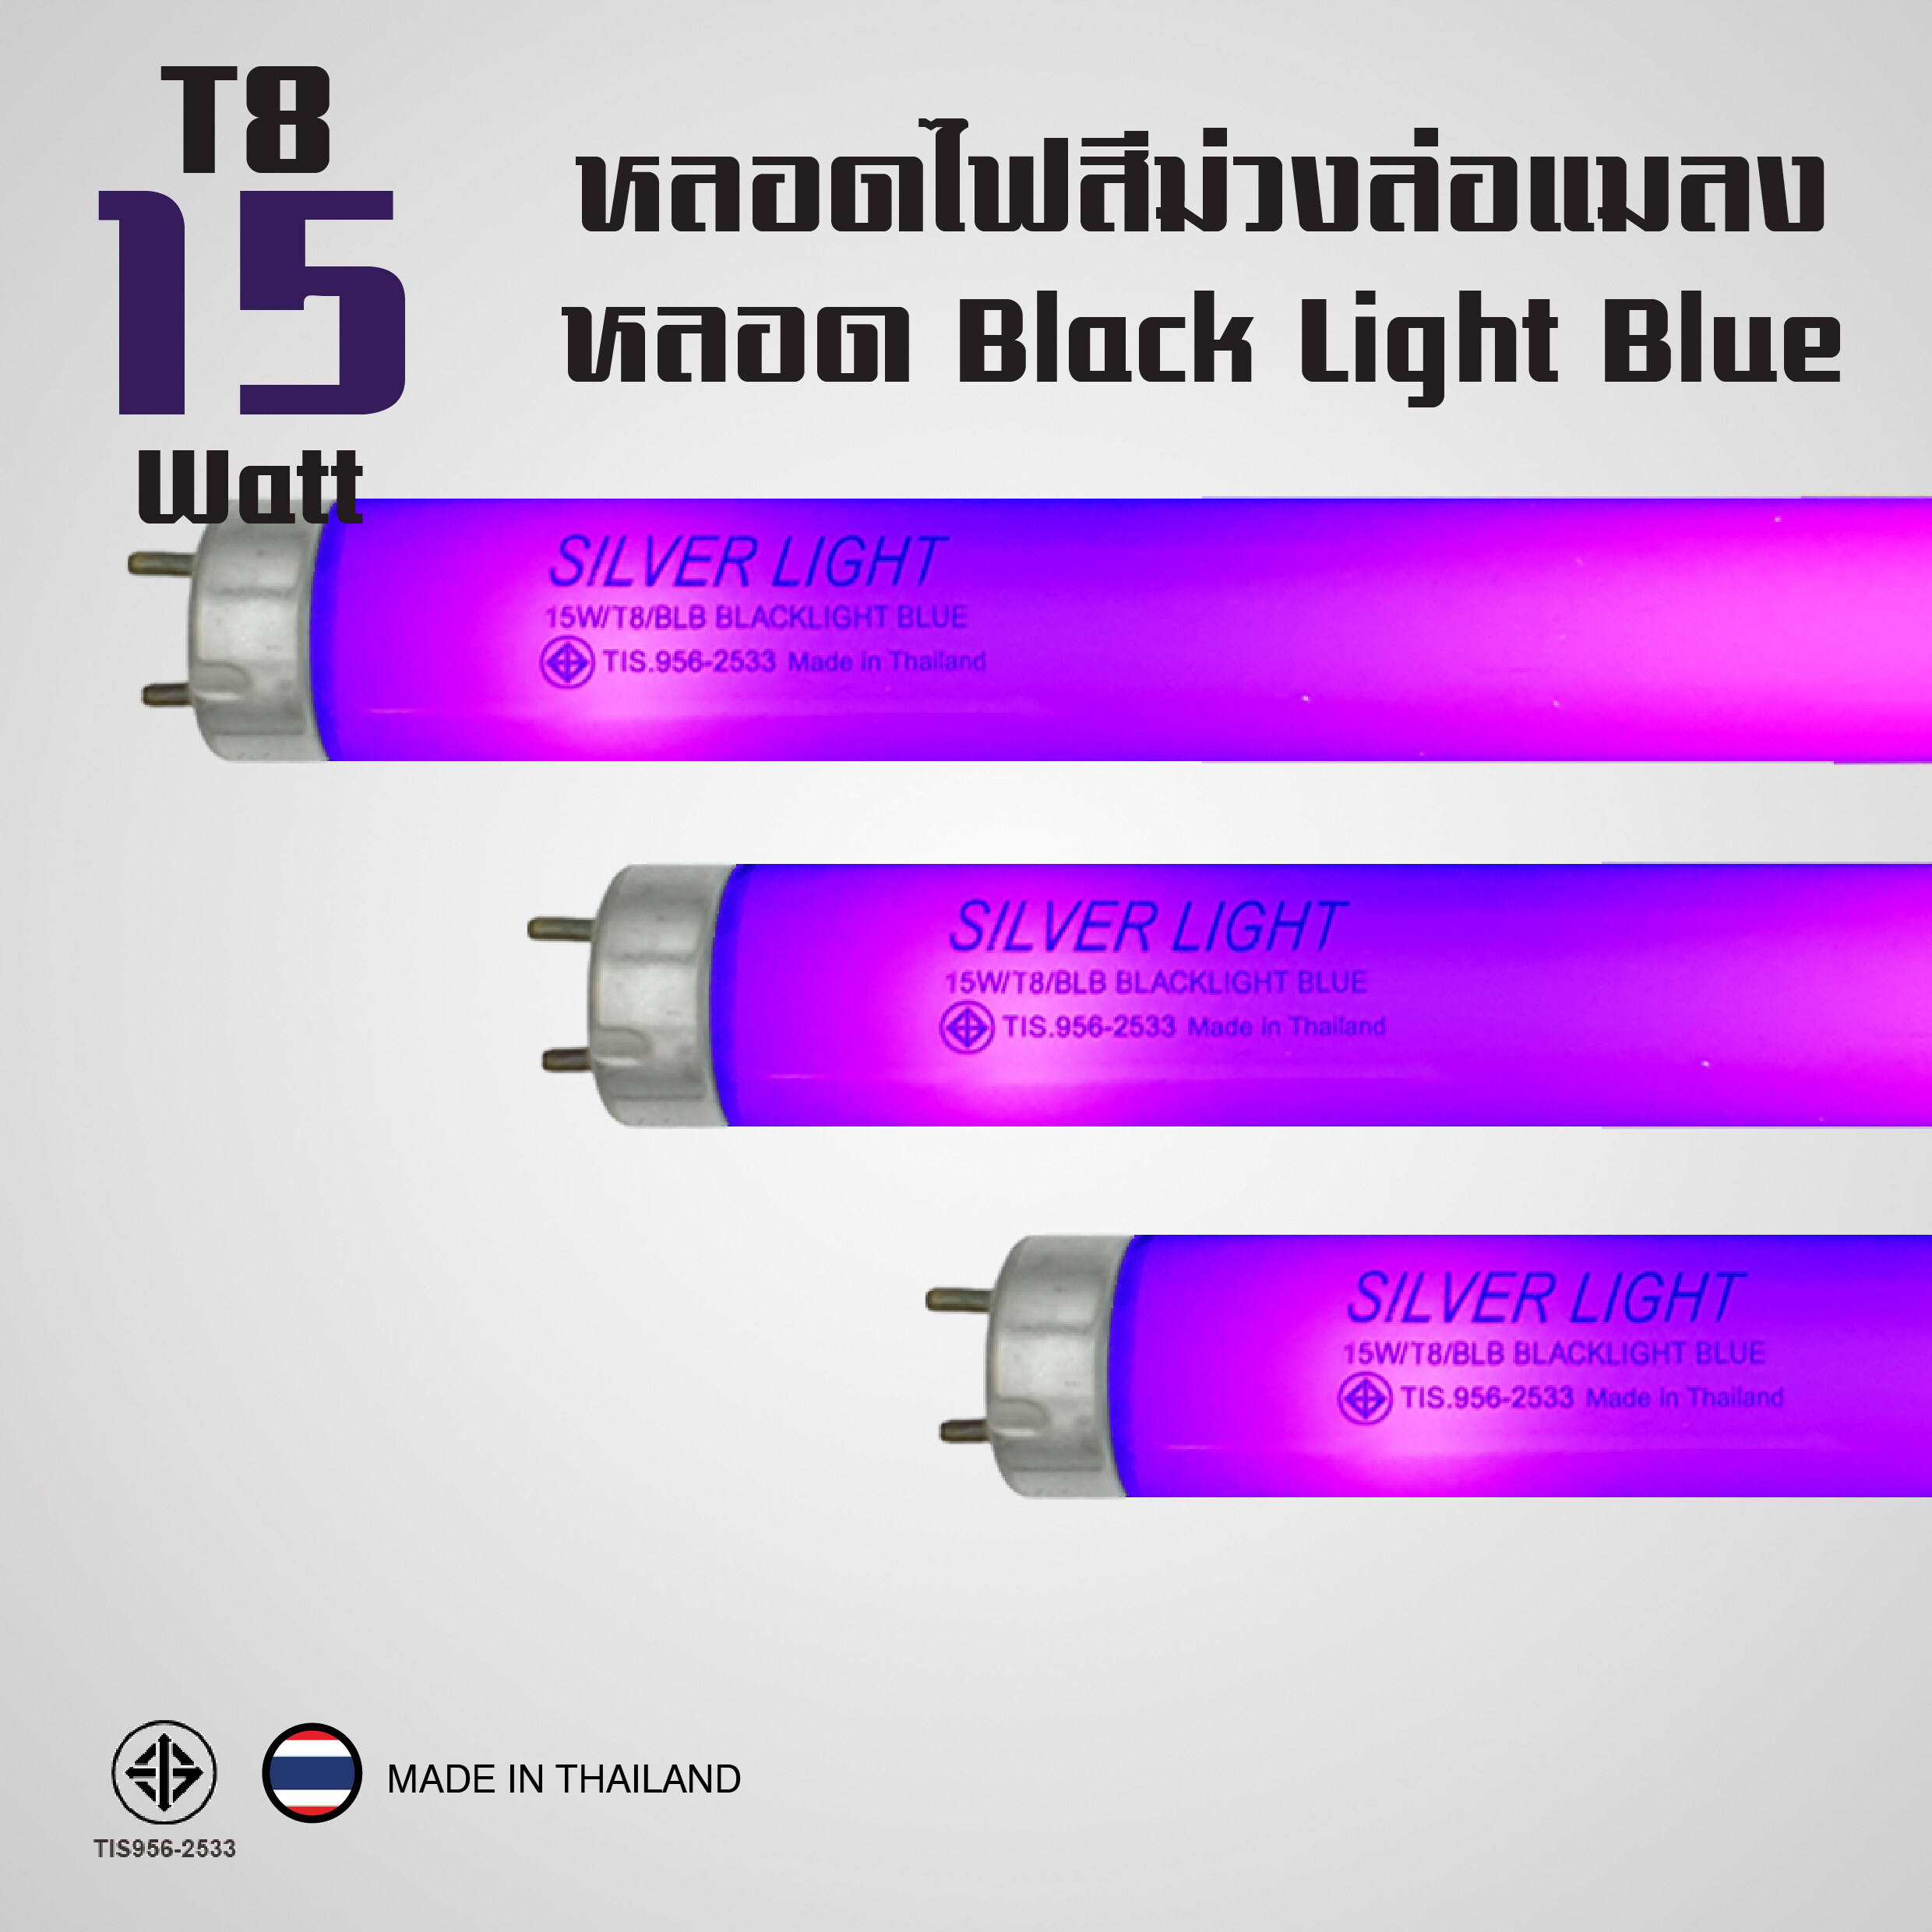 หลอดแบล็คไลท์ หลอดไฟล่อแมงดา หลอดสีม่วง 15W หลอดไฟดักแมลง (Black Light Blue) เปล่งแสงสีม่วง ยาว 45 เซนติเมตร (แพ็ค 3 หลอด)